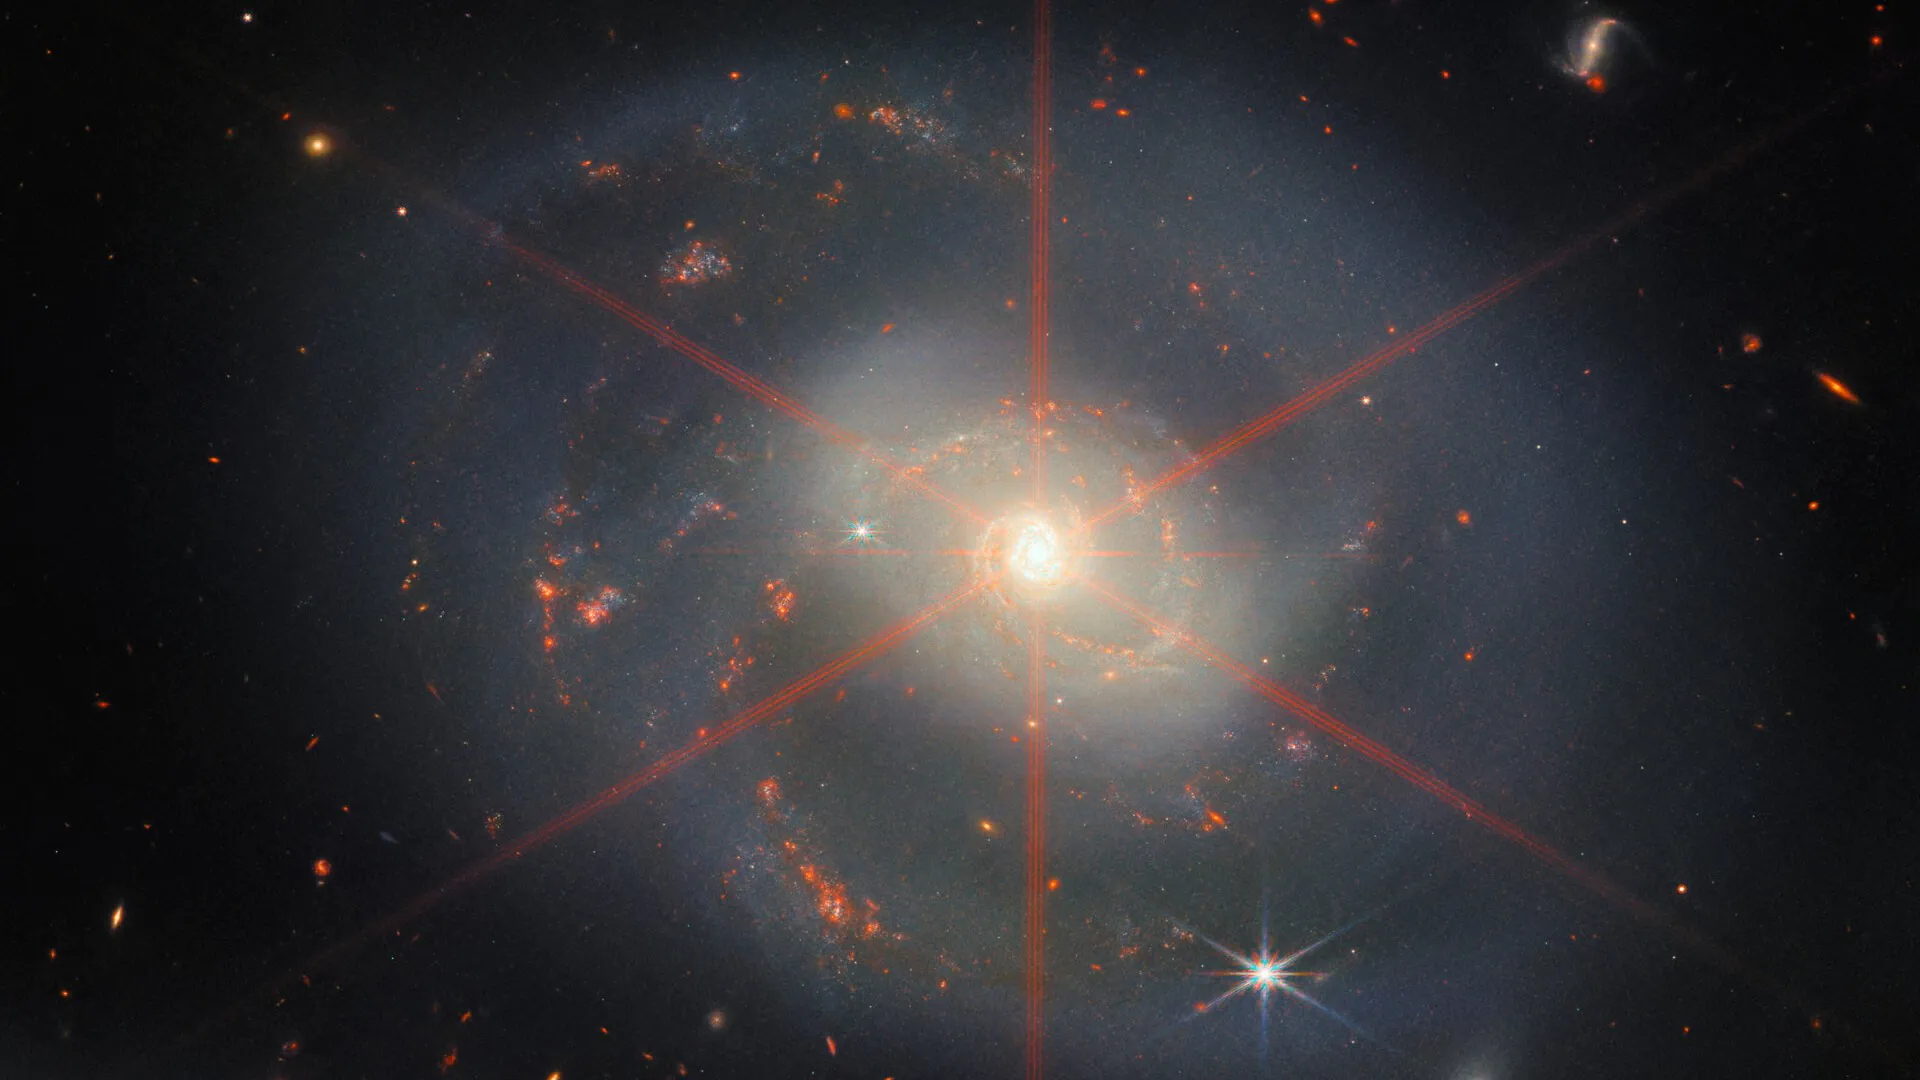 Jeyms Uebb teleskopi gulchambar ko'rinishidagi maftunkor galaktikani topdi.